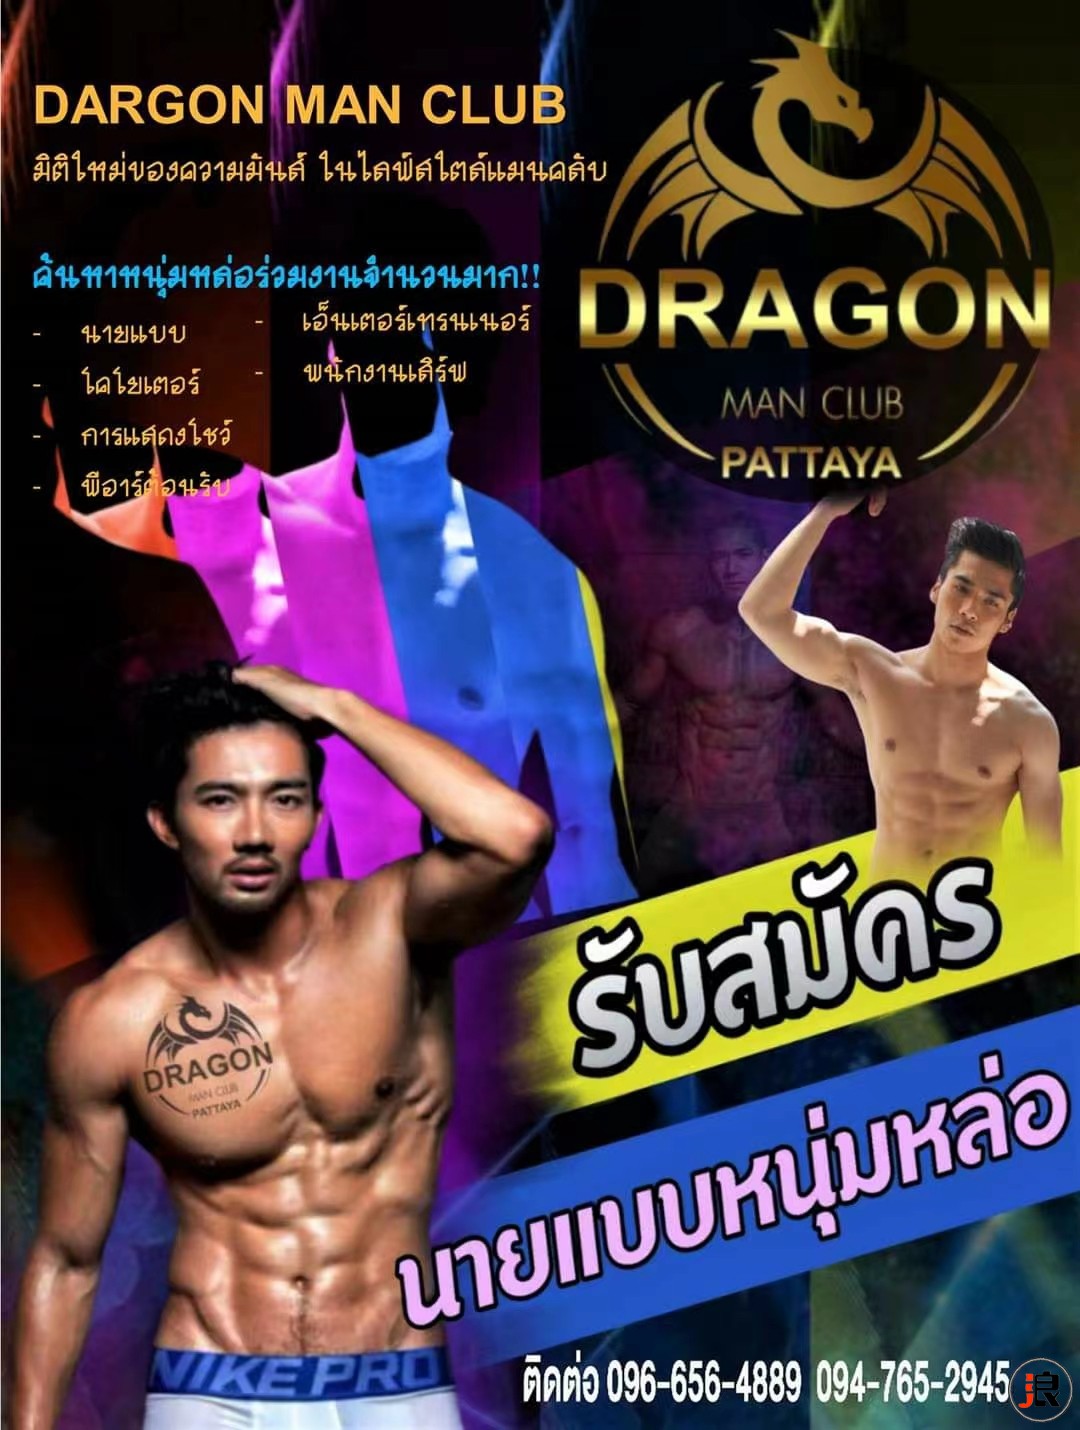 芭堤雅（酒吧）Dragon Man Club Pattaya 男模酒吧